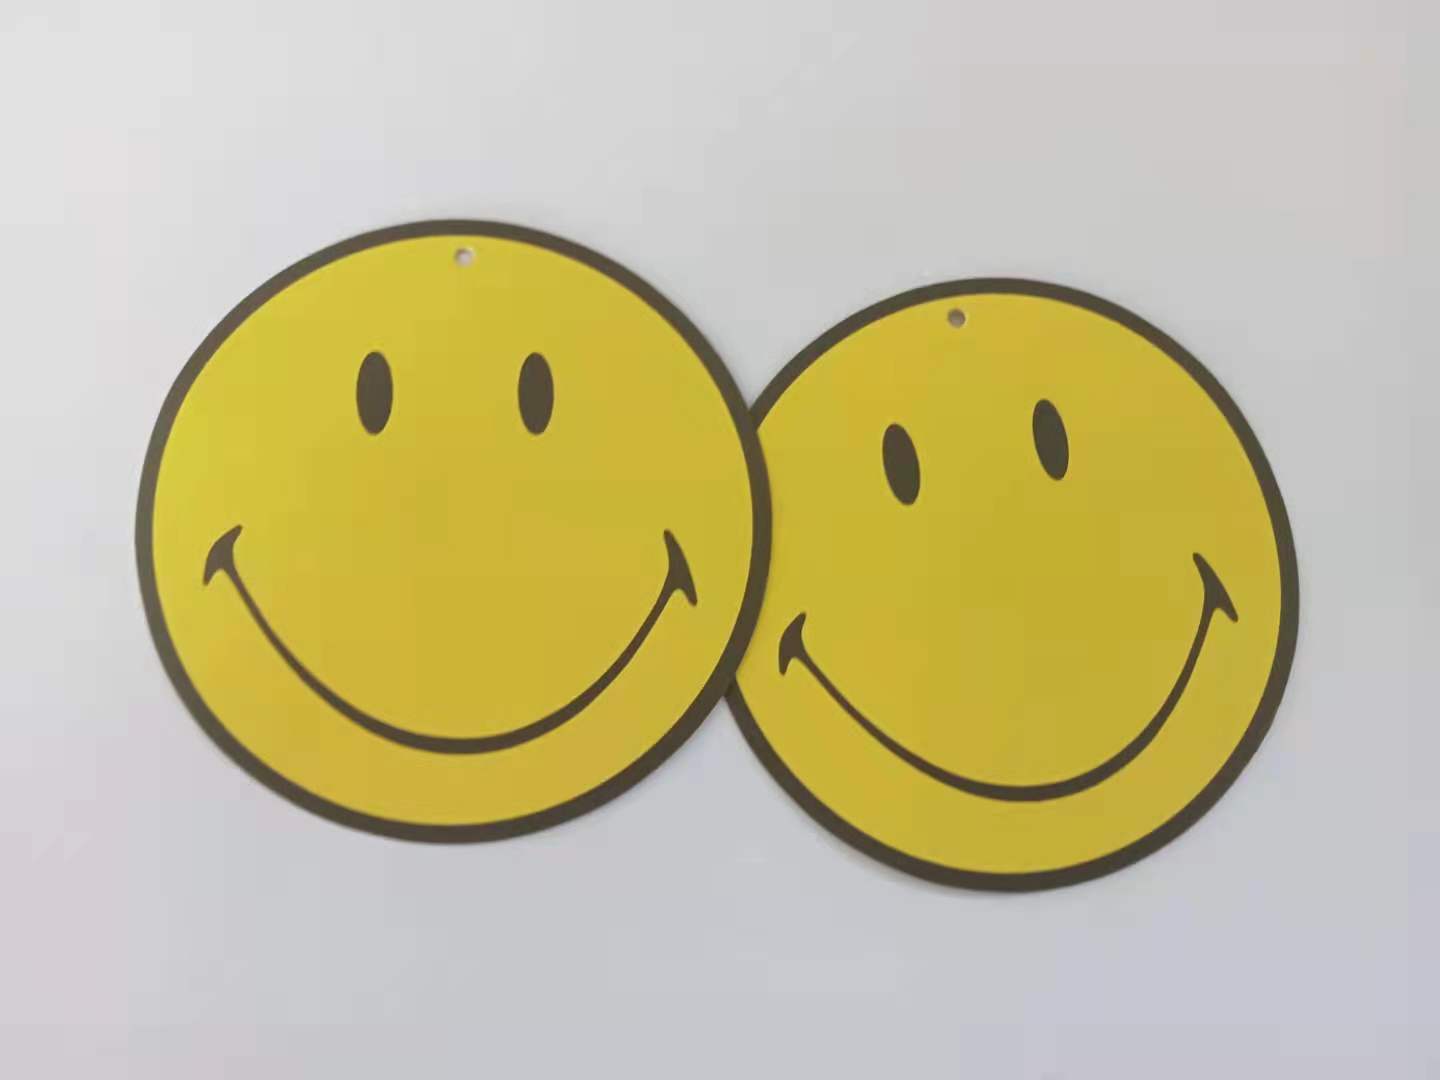 厂家直销黄色笑脸圆形吊牌 可用作多种商品包装辅料 特种纸吊牌 现货3